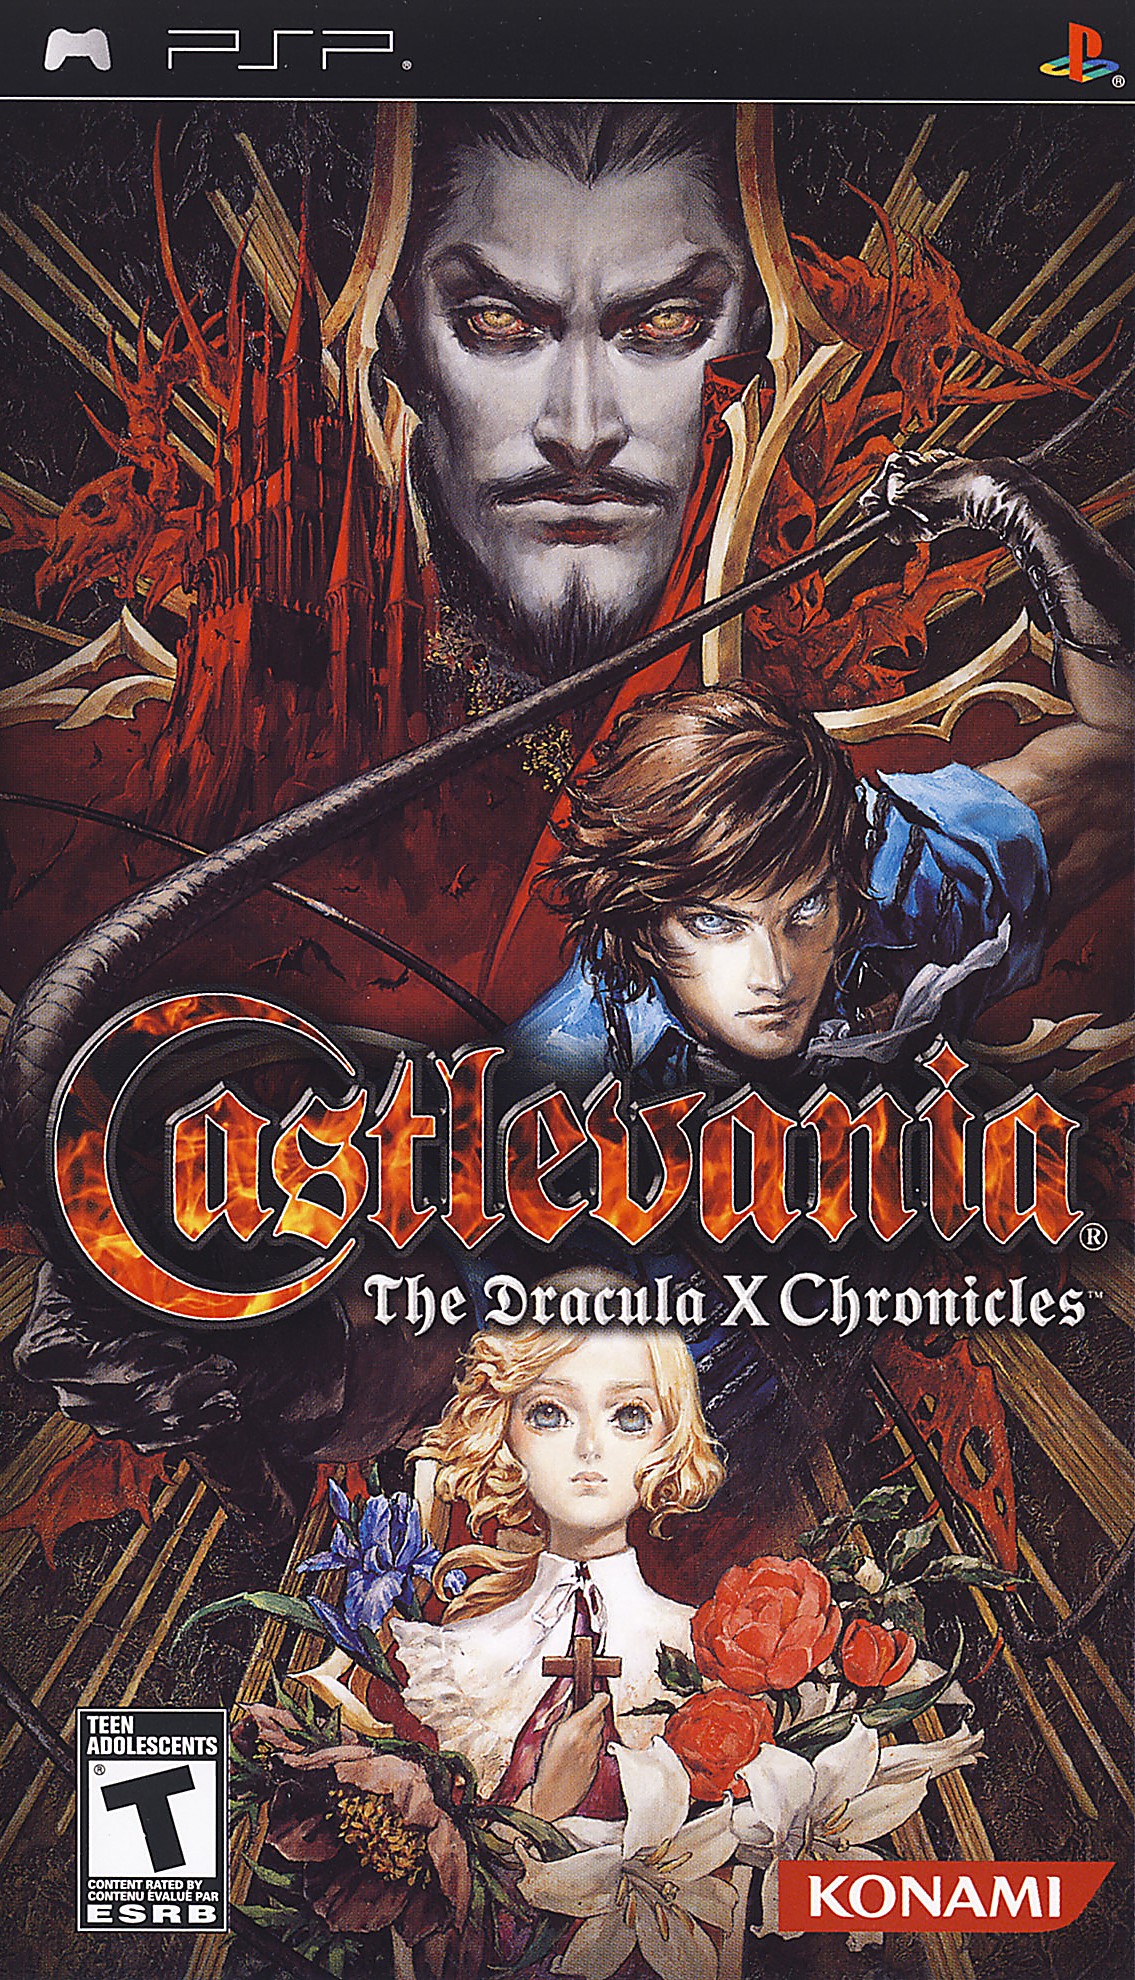 'Castlevania: The Dracula X Chronicles'